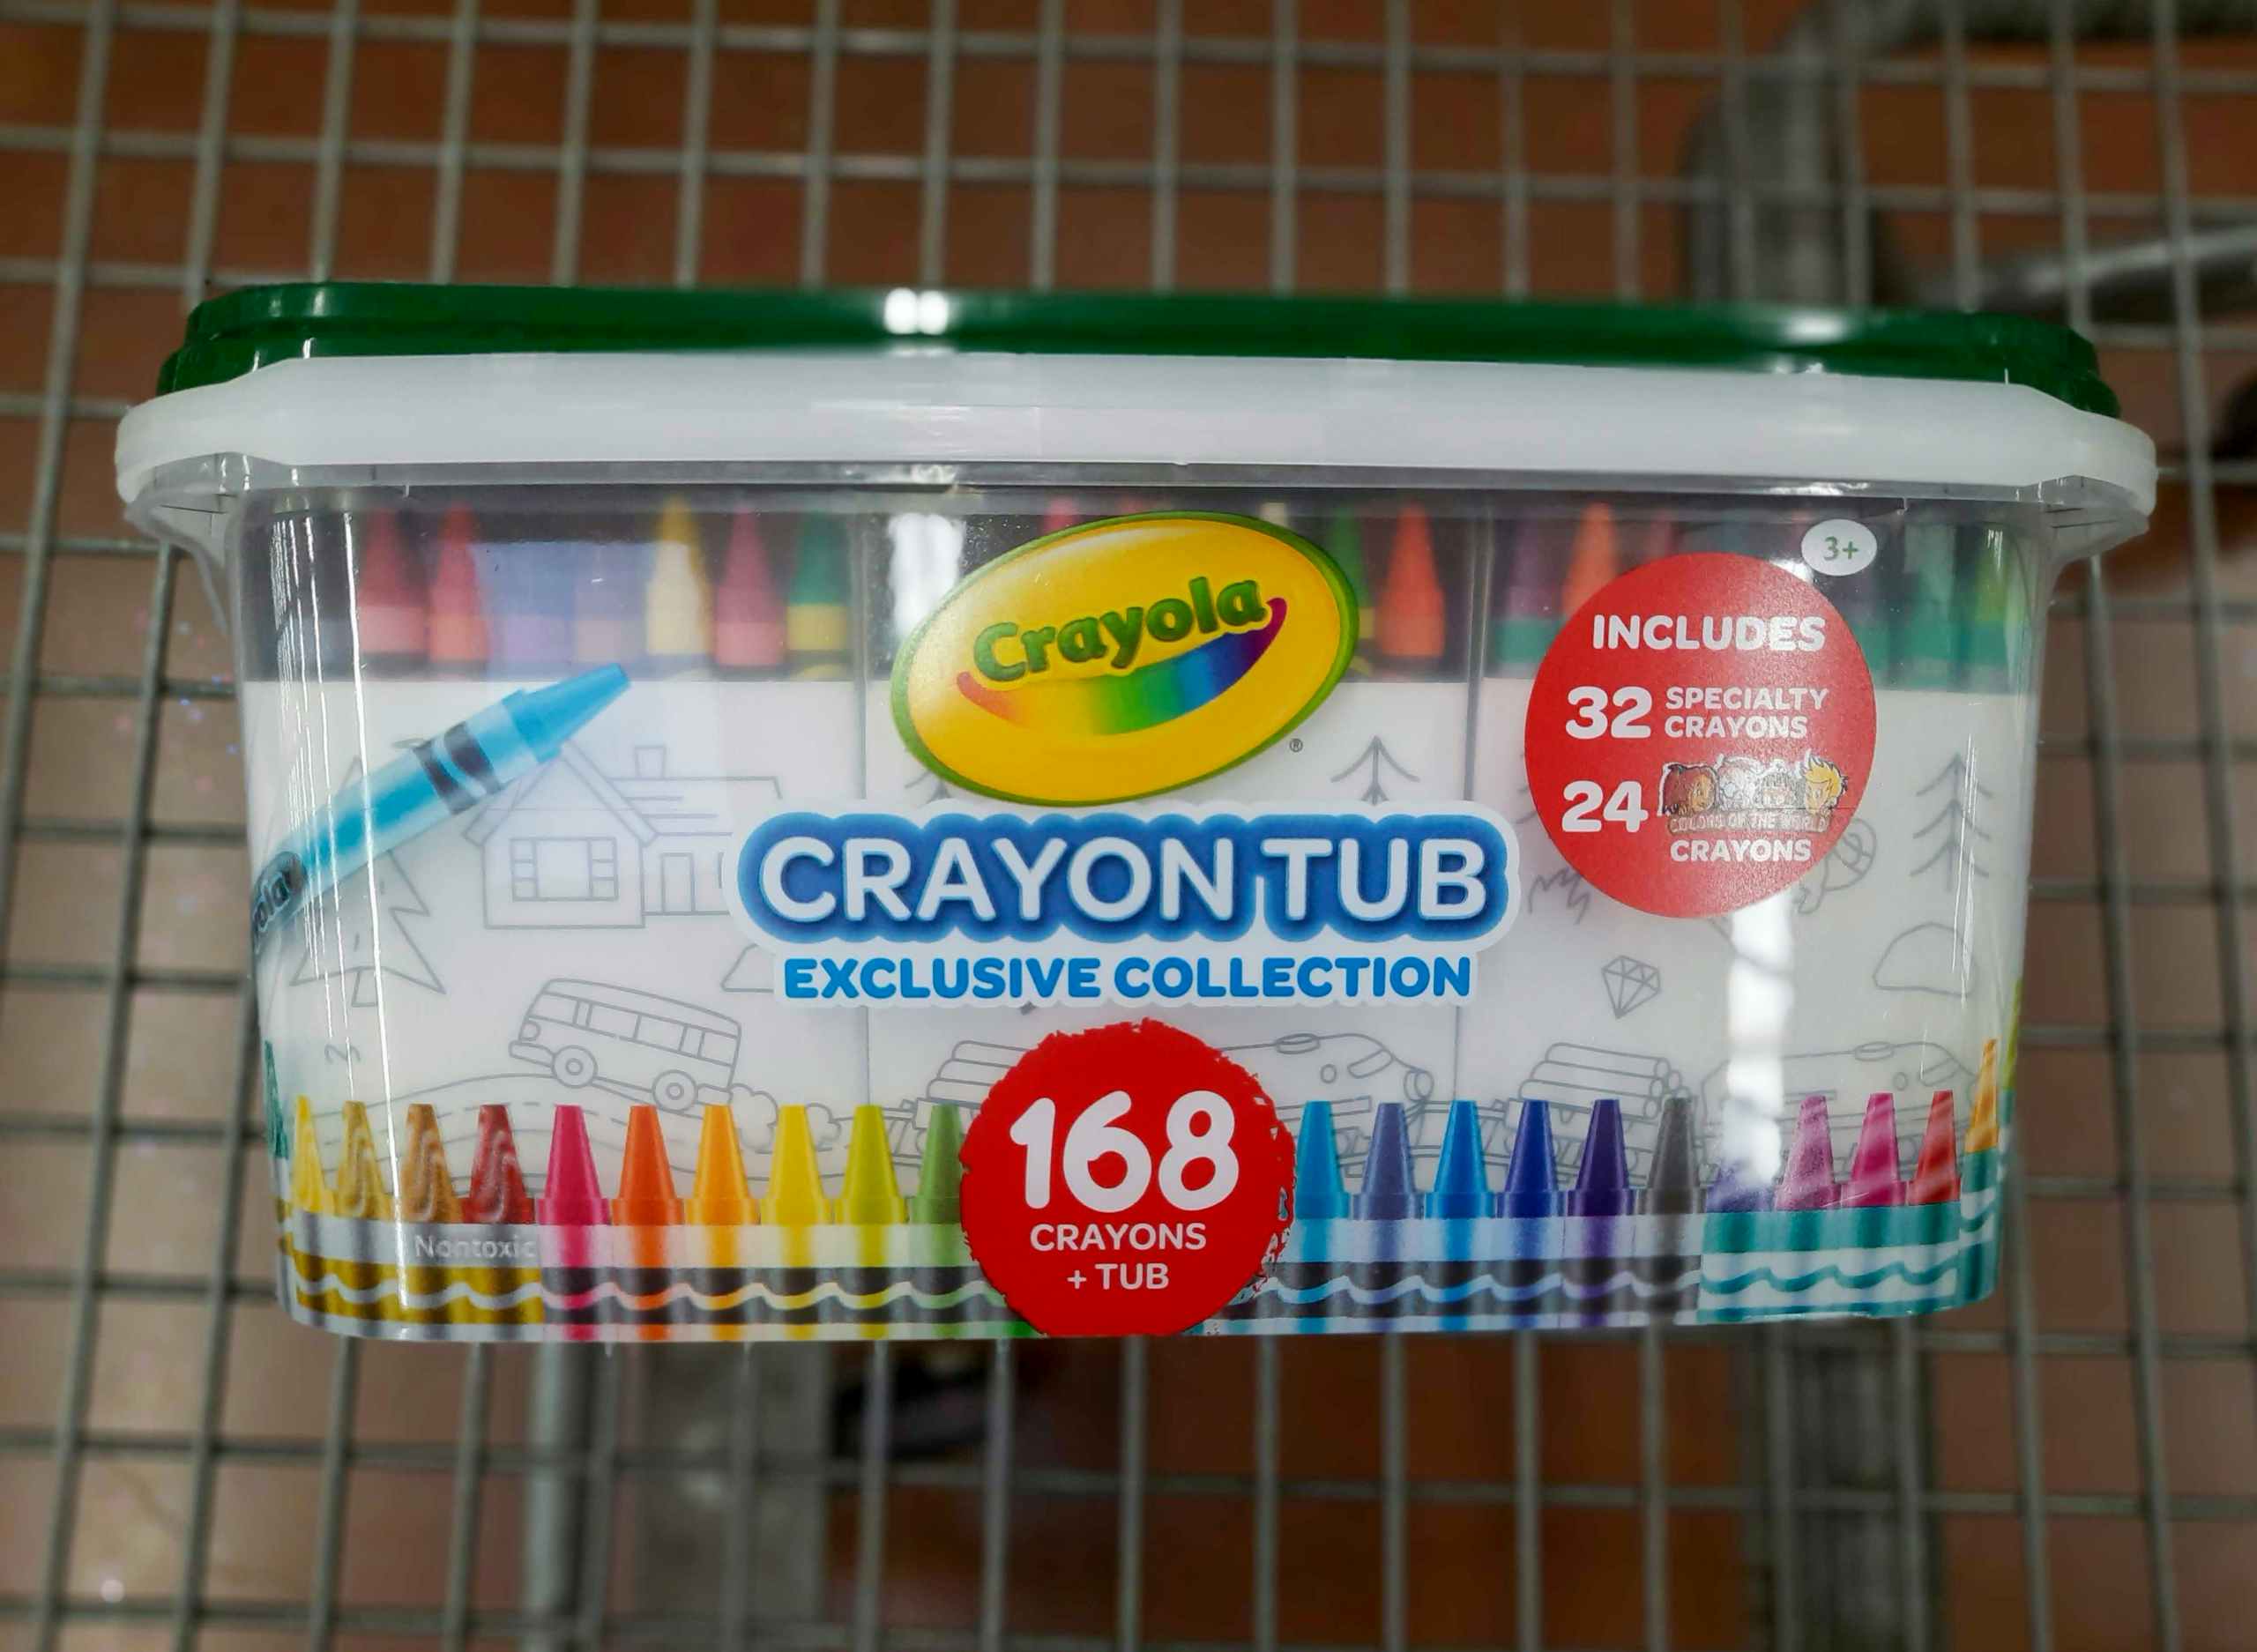 Crayola Crayon Tub at Walmart